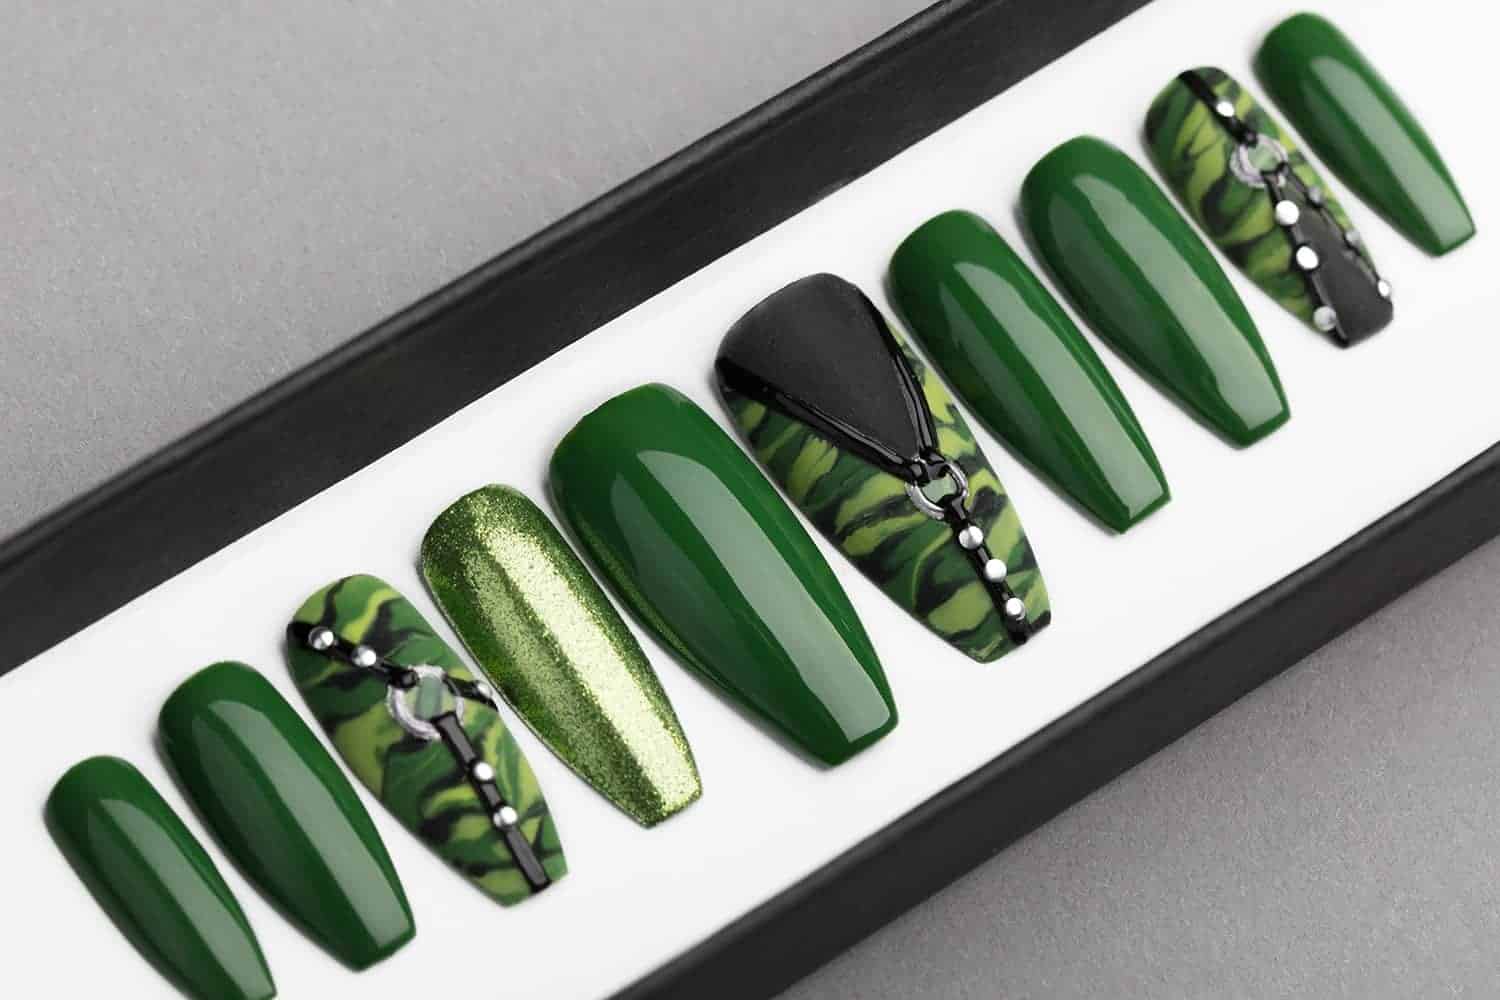 Green Camo Press on Nails | Hand painted Nail Art | Fake Nails | False Nails | Artificial Nails